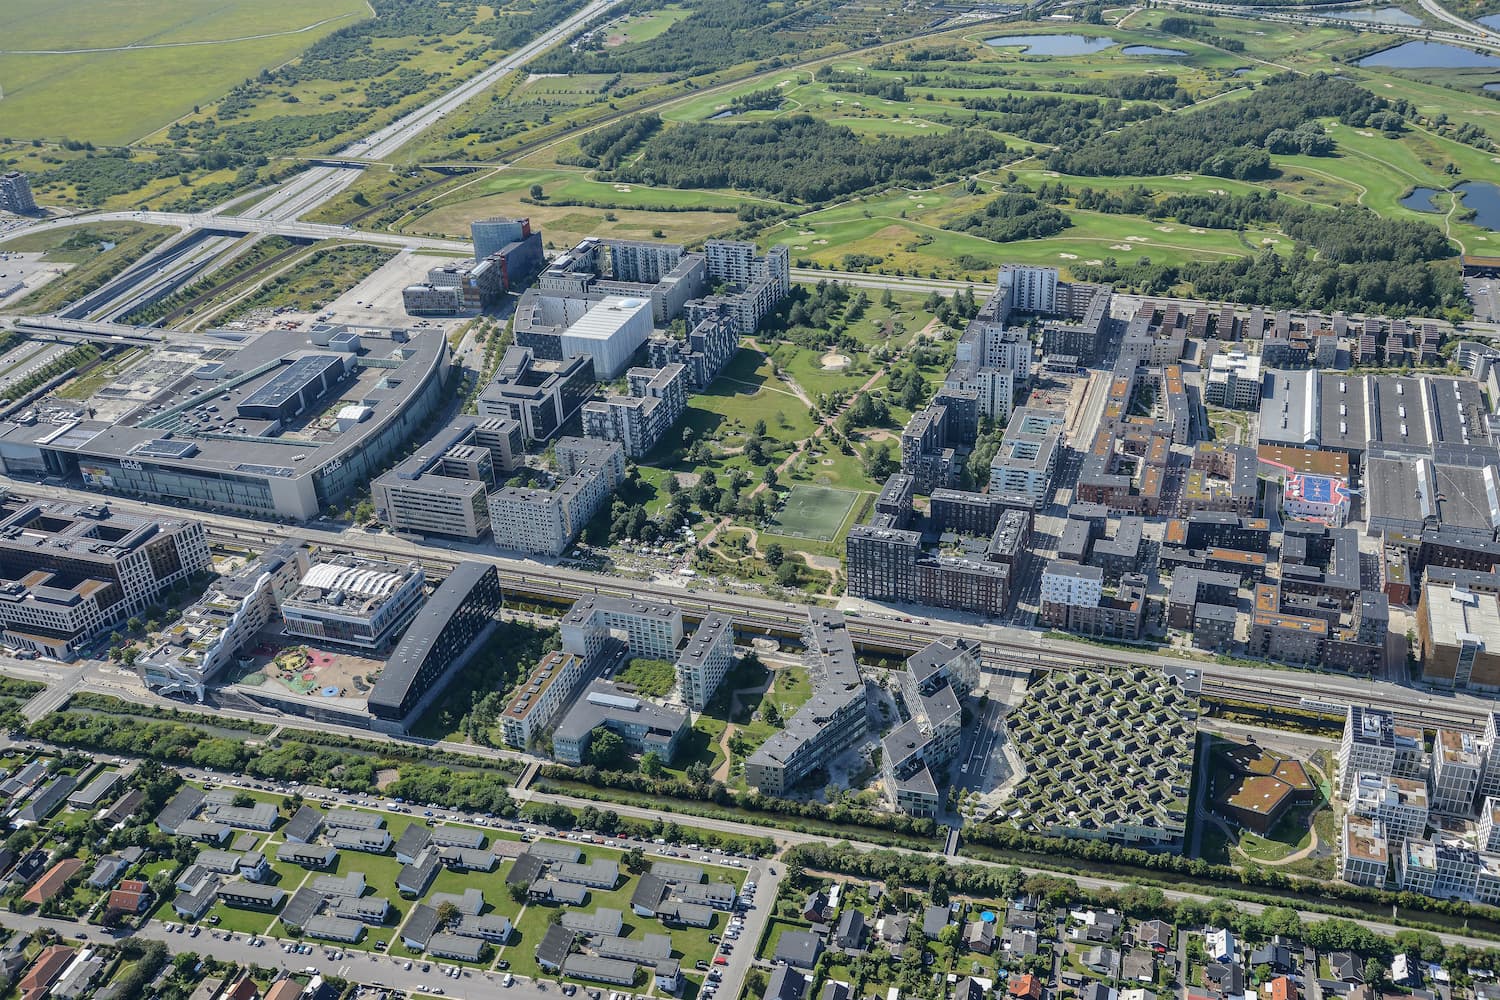 Luftfoto af Ørestad City med udsyn over blandt andet Byparken, Field's, Ørestad Streethal, Bjerget og Ørestad Gymnasium.